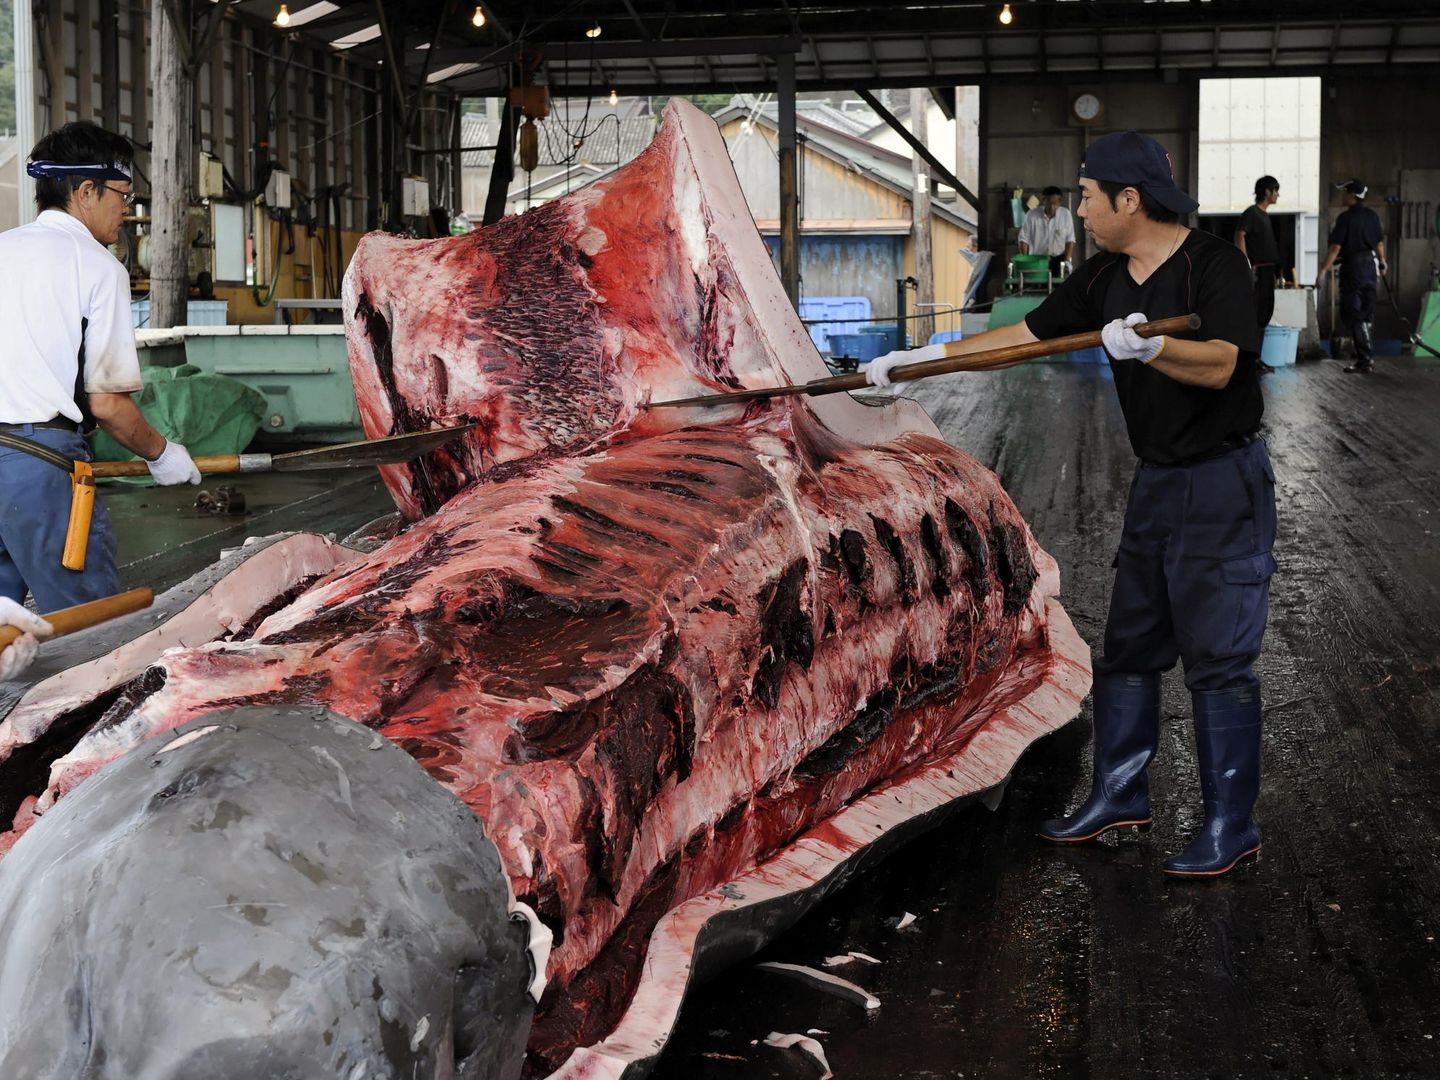 Imagen de archivo datada el 30 de julio del 2009 de varios pescadores quitando la piel a una ballena en Wada Port, Japón. El Gobierno japonés ha decidido continuar con la caza de ballenas en el Pacífico Norte aunque recortará las capturas, a raíz de la sentencia de la Corte Internacional de Justicia (CIJ) que ordenó a este país detener esta actividad en la Antártida. (EFE)